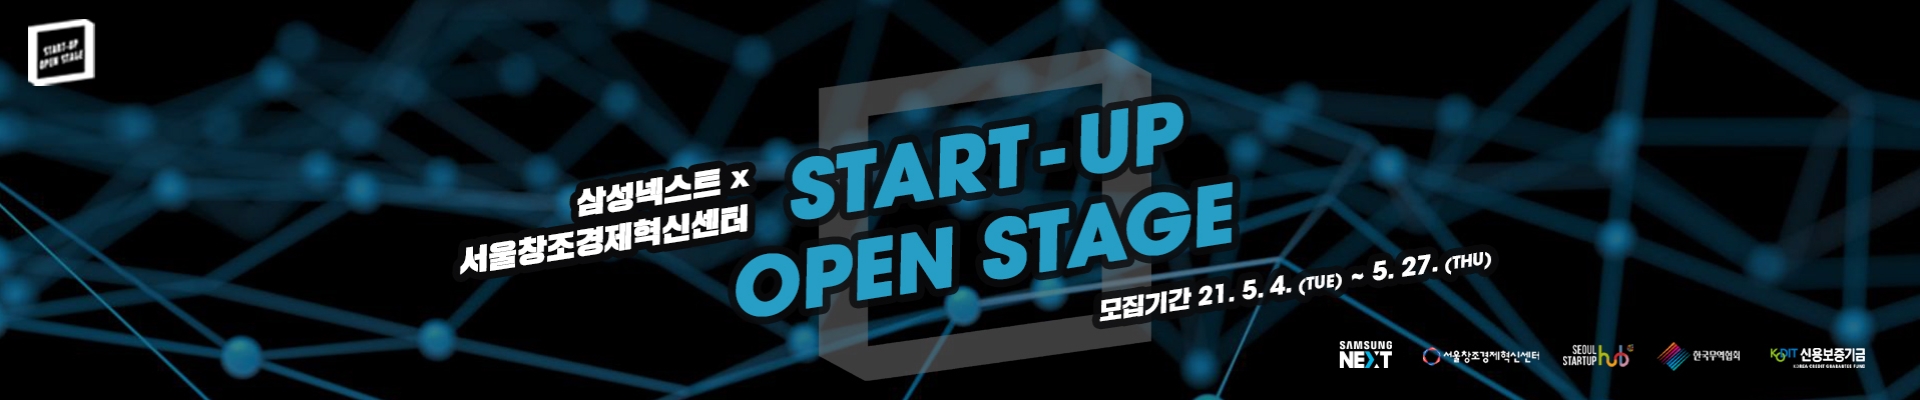 삼성넥스트 x 서울창조경제혁신센터 Startup open stage